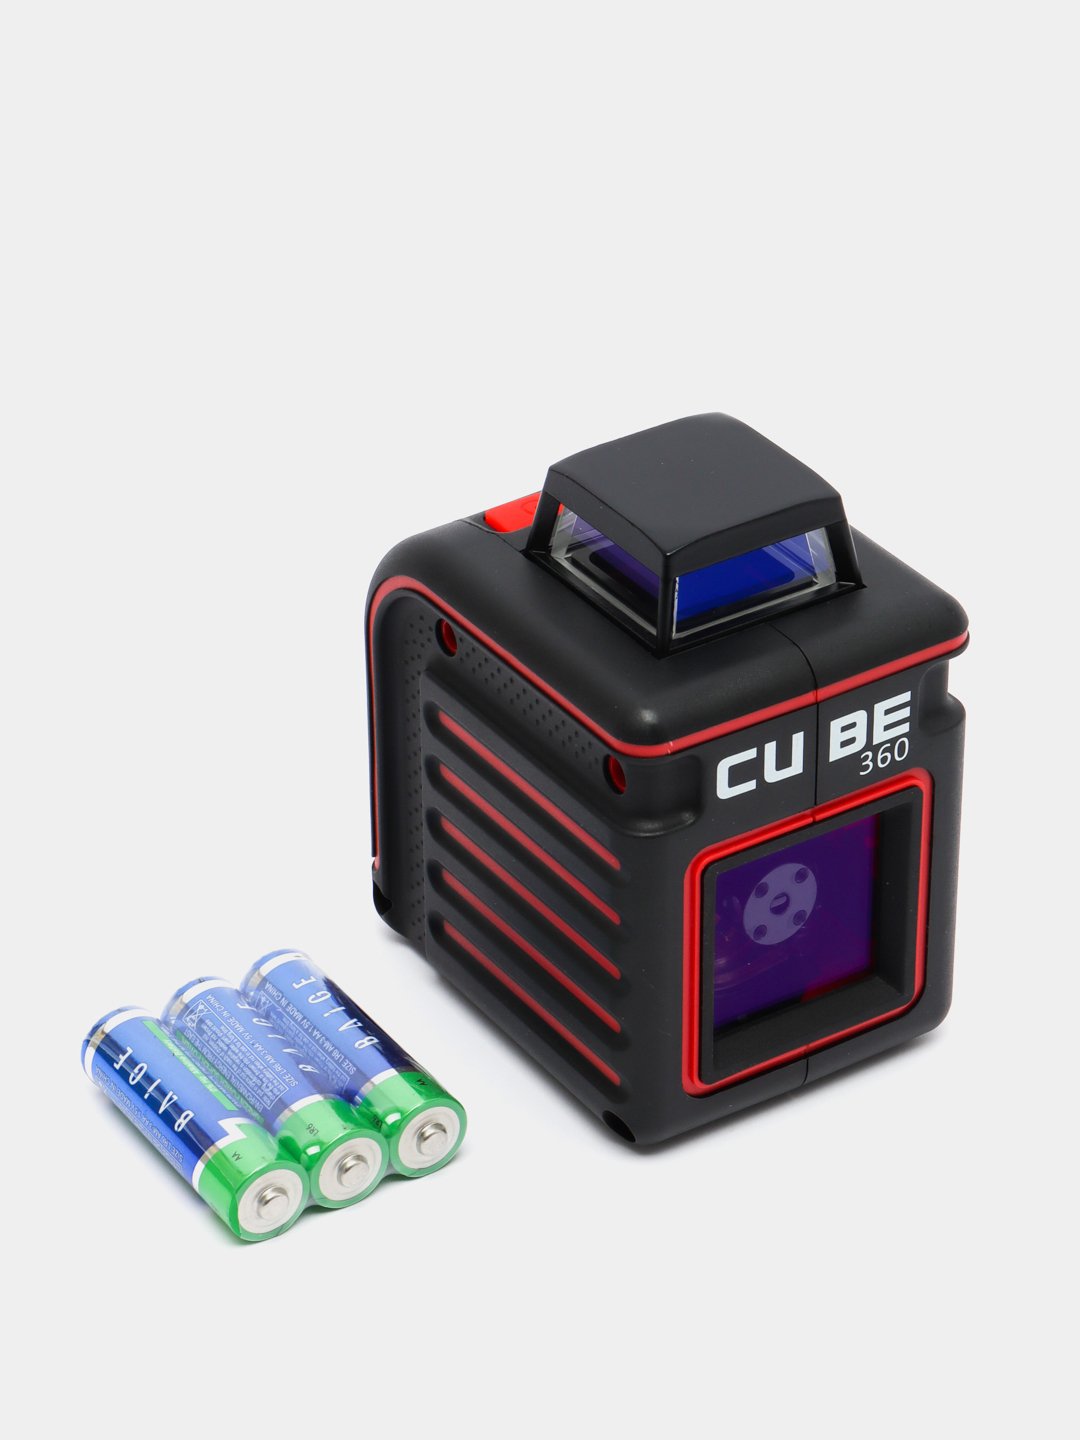 Cube 360 basic edition. Лазерный уровень Cube 360. Построитель плоскостей. Кубик 360 градусов. Построитель плоскостей лазерный 360 градусов купить.